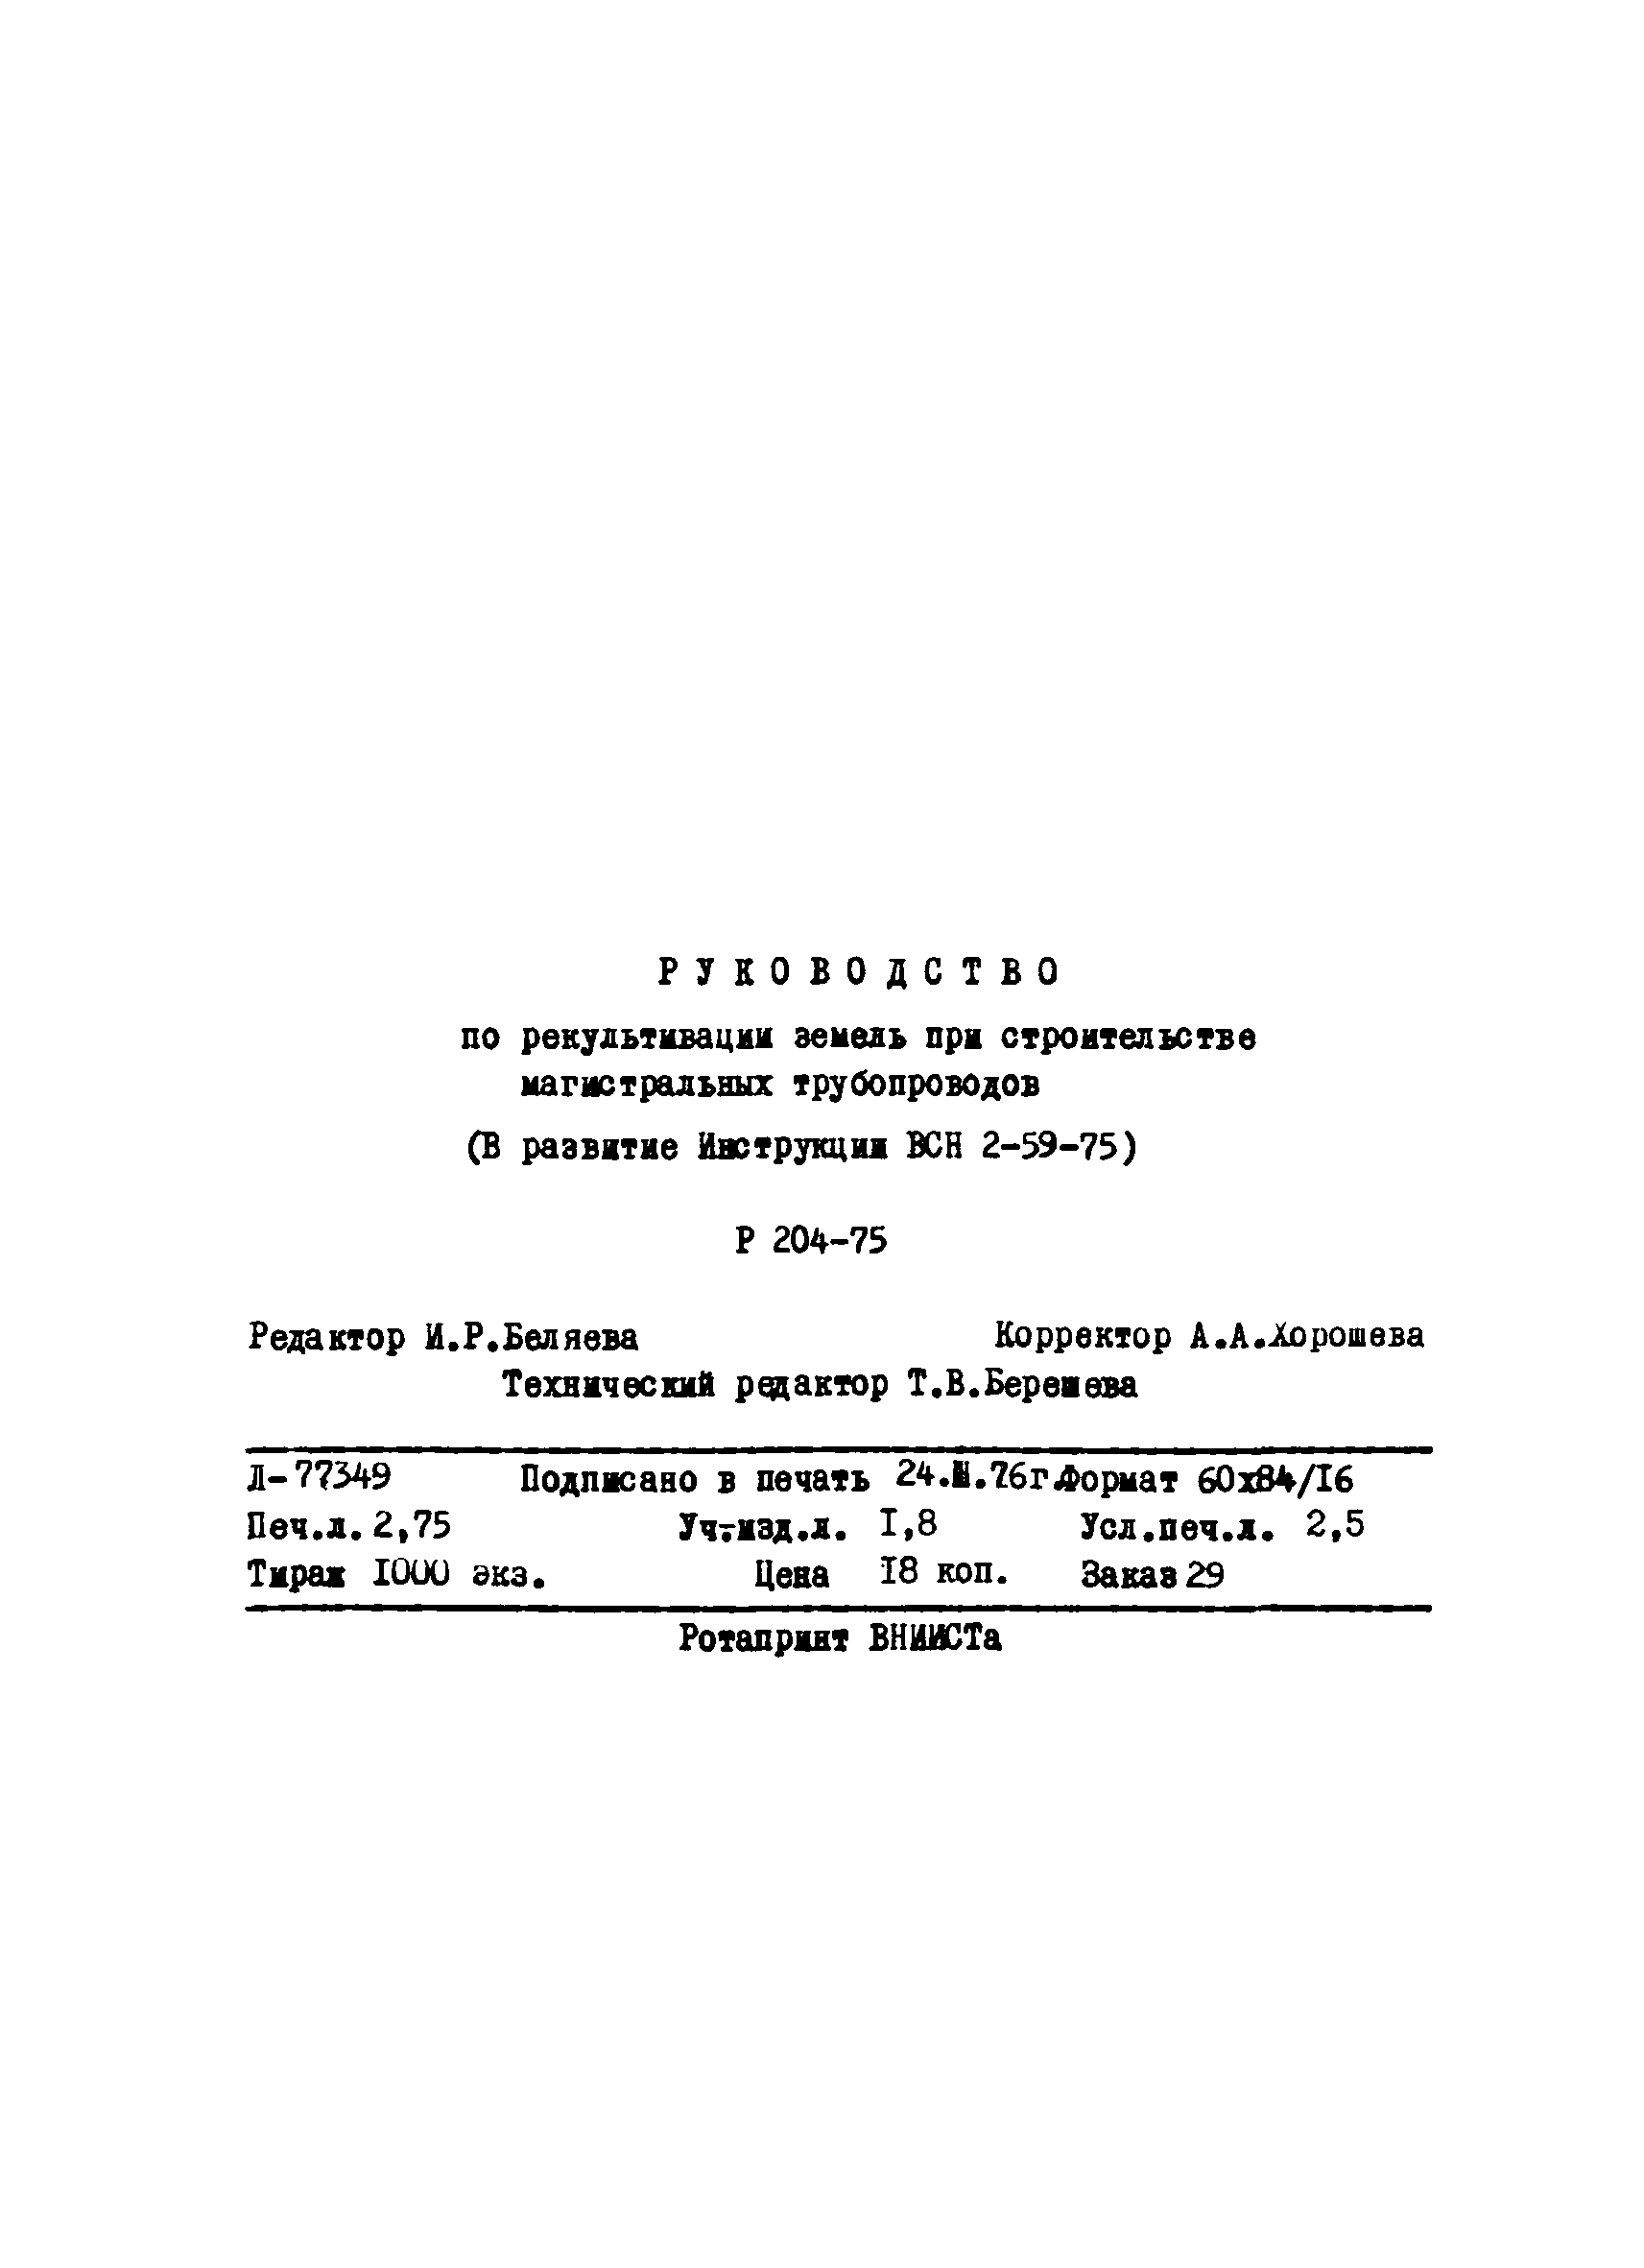 ВСН 2-59-75/Миннефтегазстрой